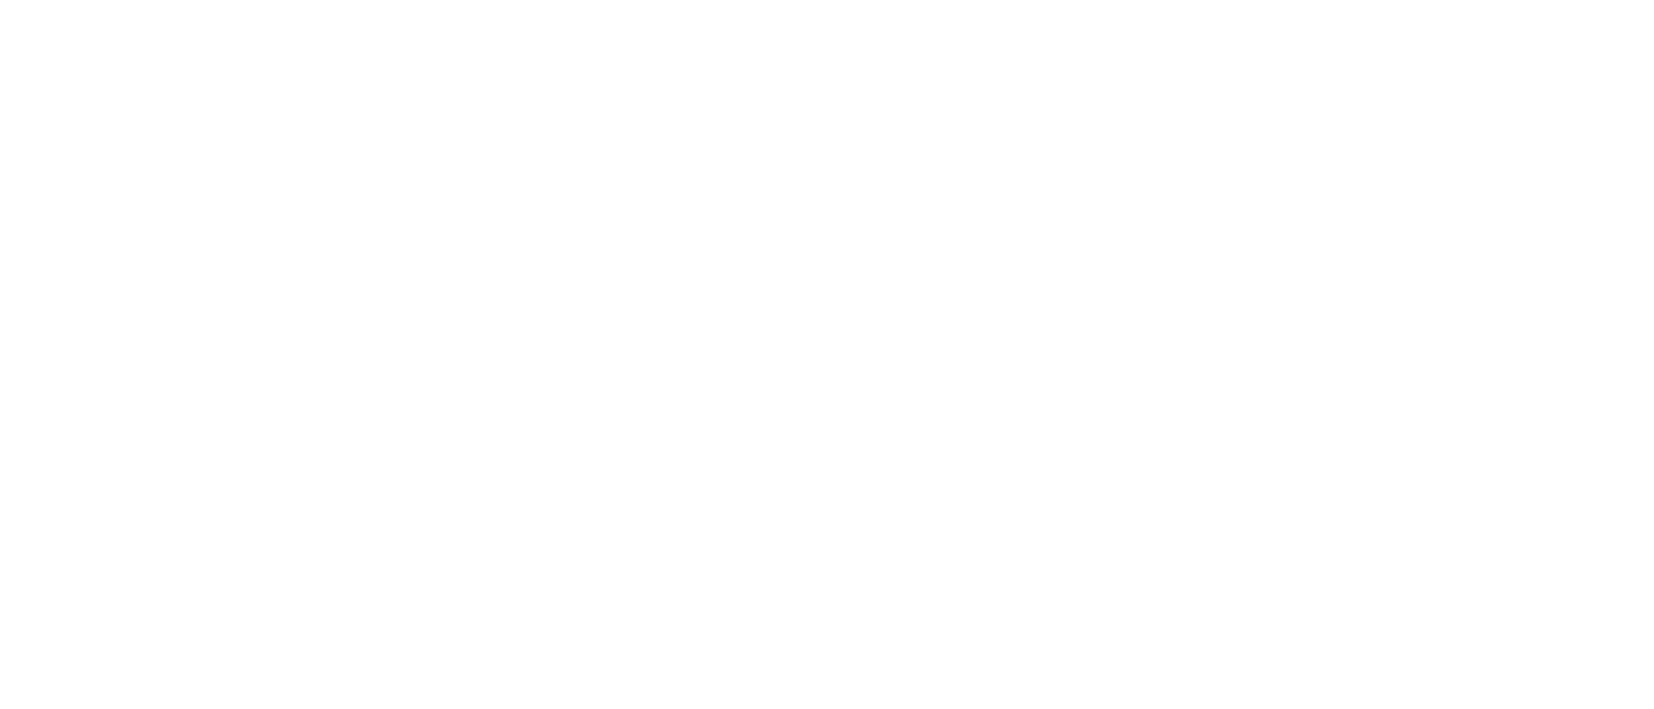 EUSPA Logo